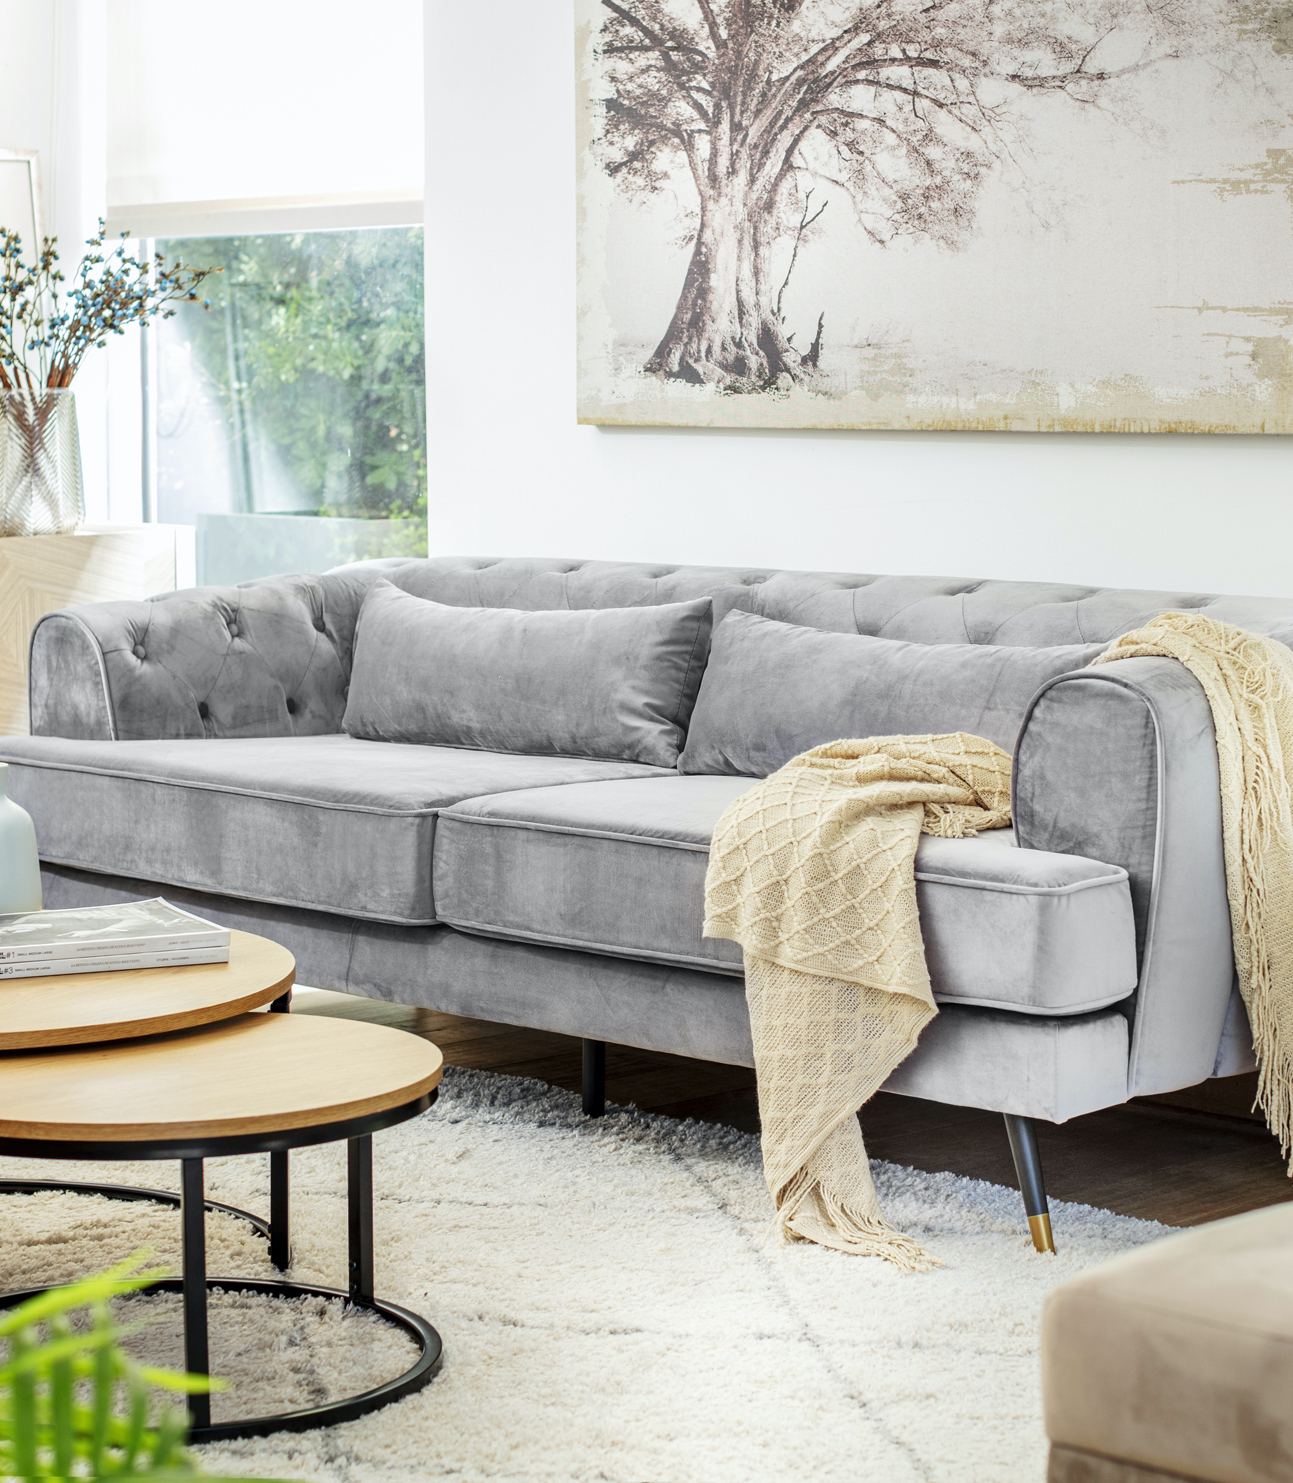 Living de paredes blancas con un gran cuadro en tonos crema, un sofá gris estilo capitoné con una manta color arena encima. Frente al sofá hay 2 mesas de centro redondas que se sobreponen.